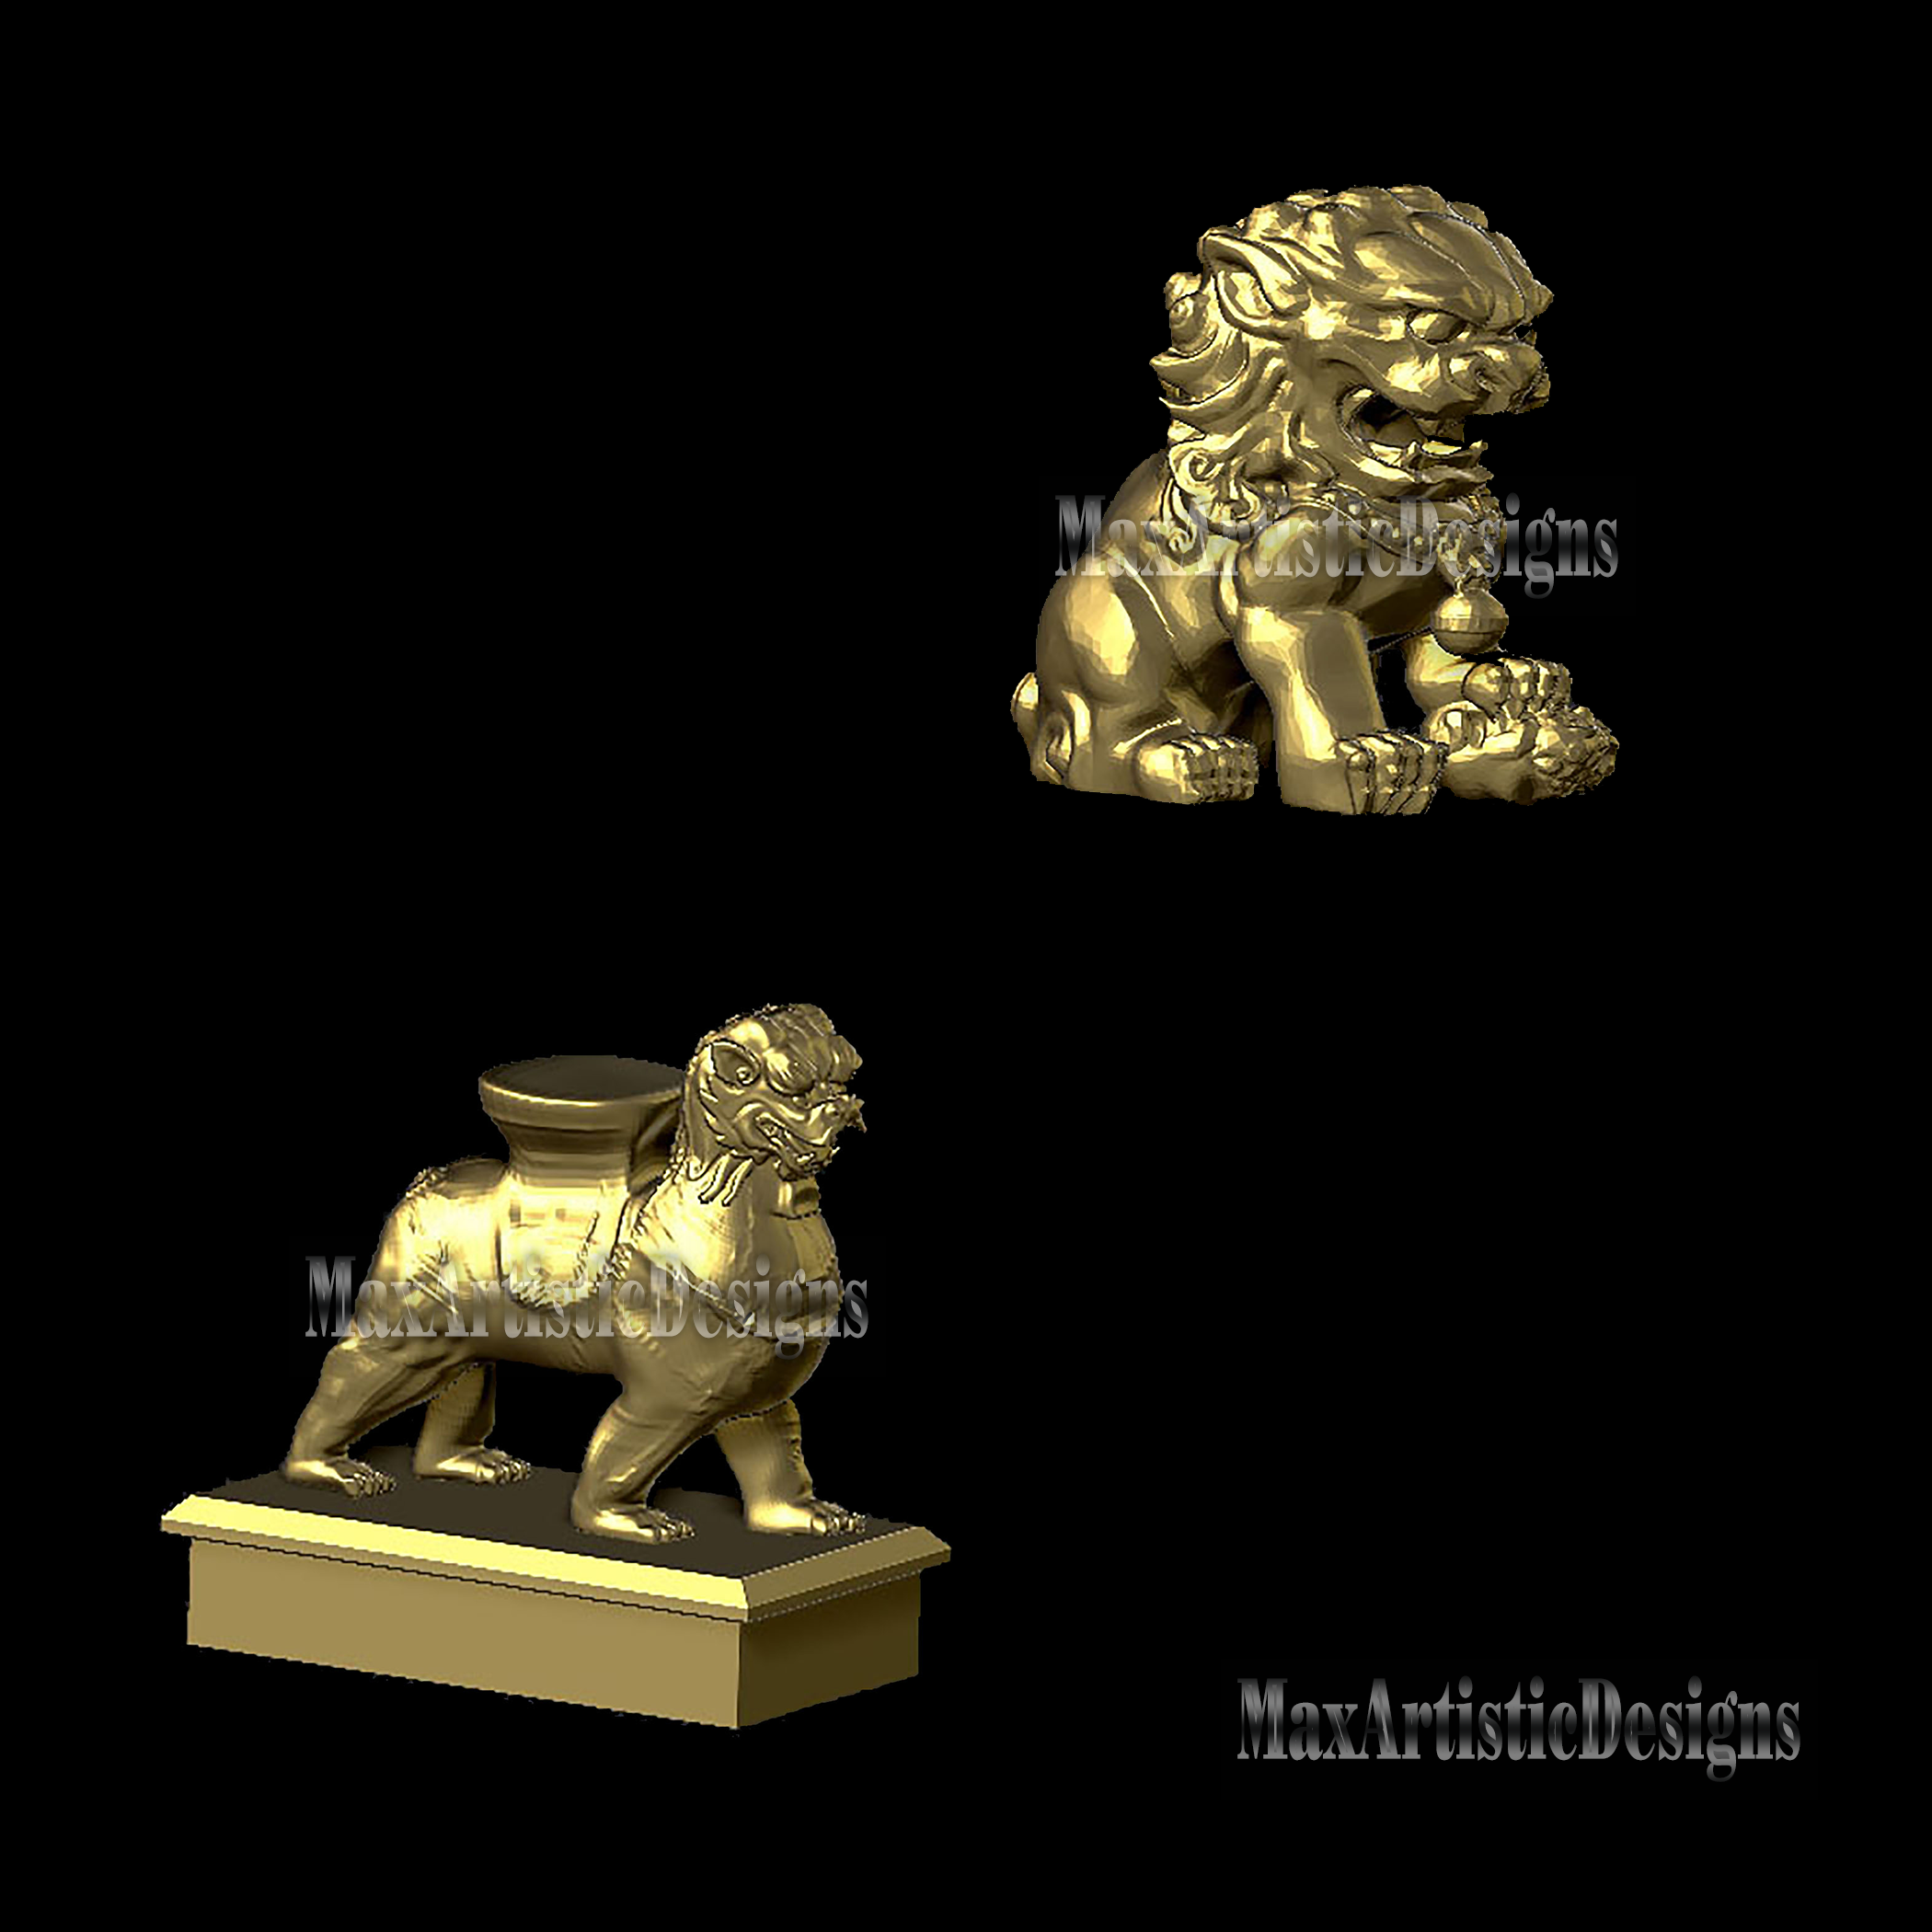 8+ 3d stl lion figure e sculture file 3d stl per cnc carving router e stampanti 3d stl download digitale